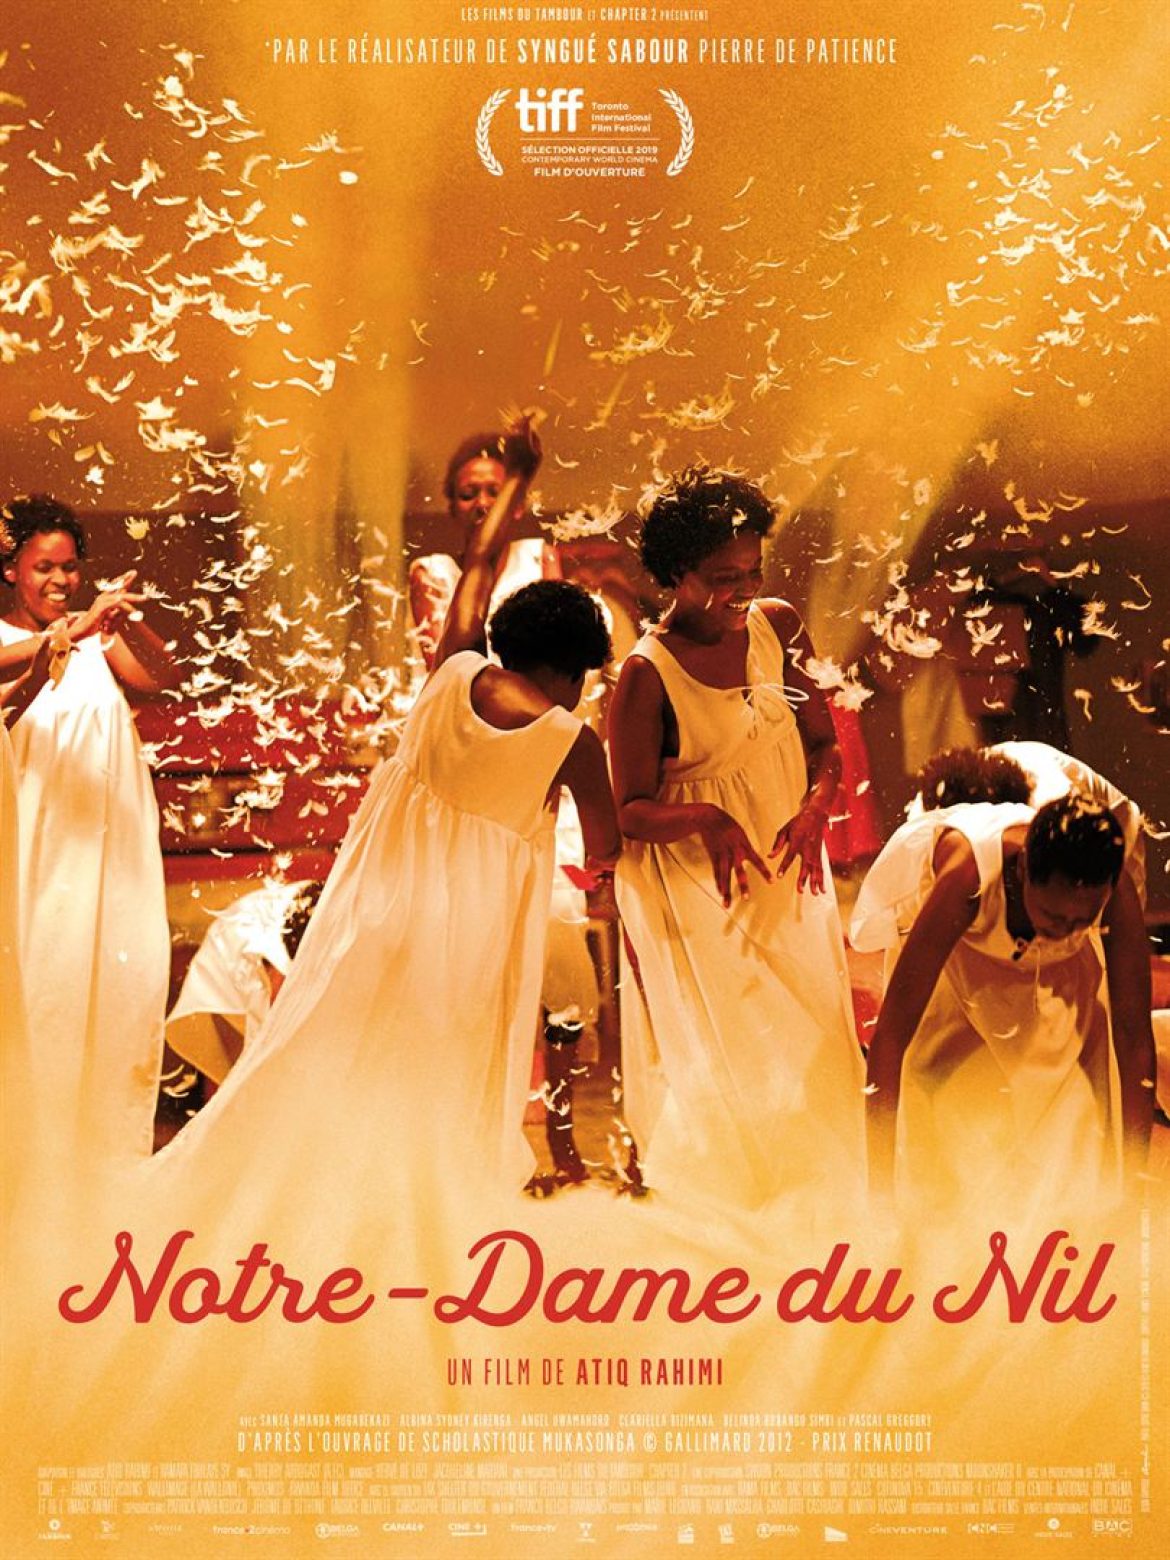 Films du Sud: Notre-Dame du Nil (VOst)